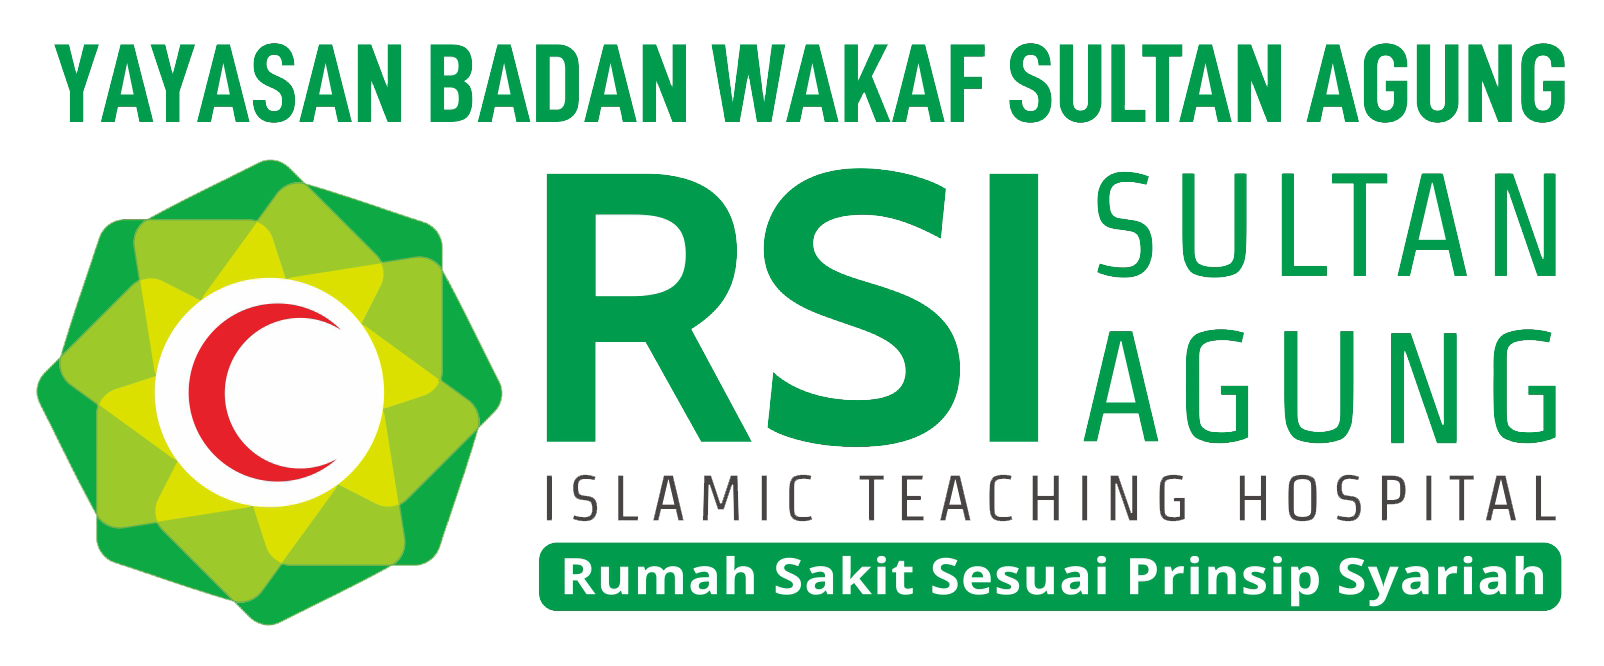 RSI Sultan Agung - Islamic Teaching Hospital